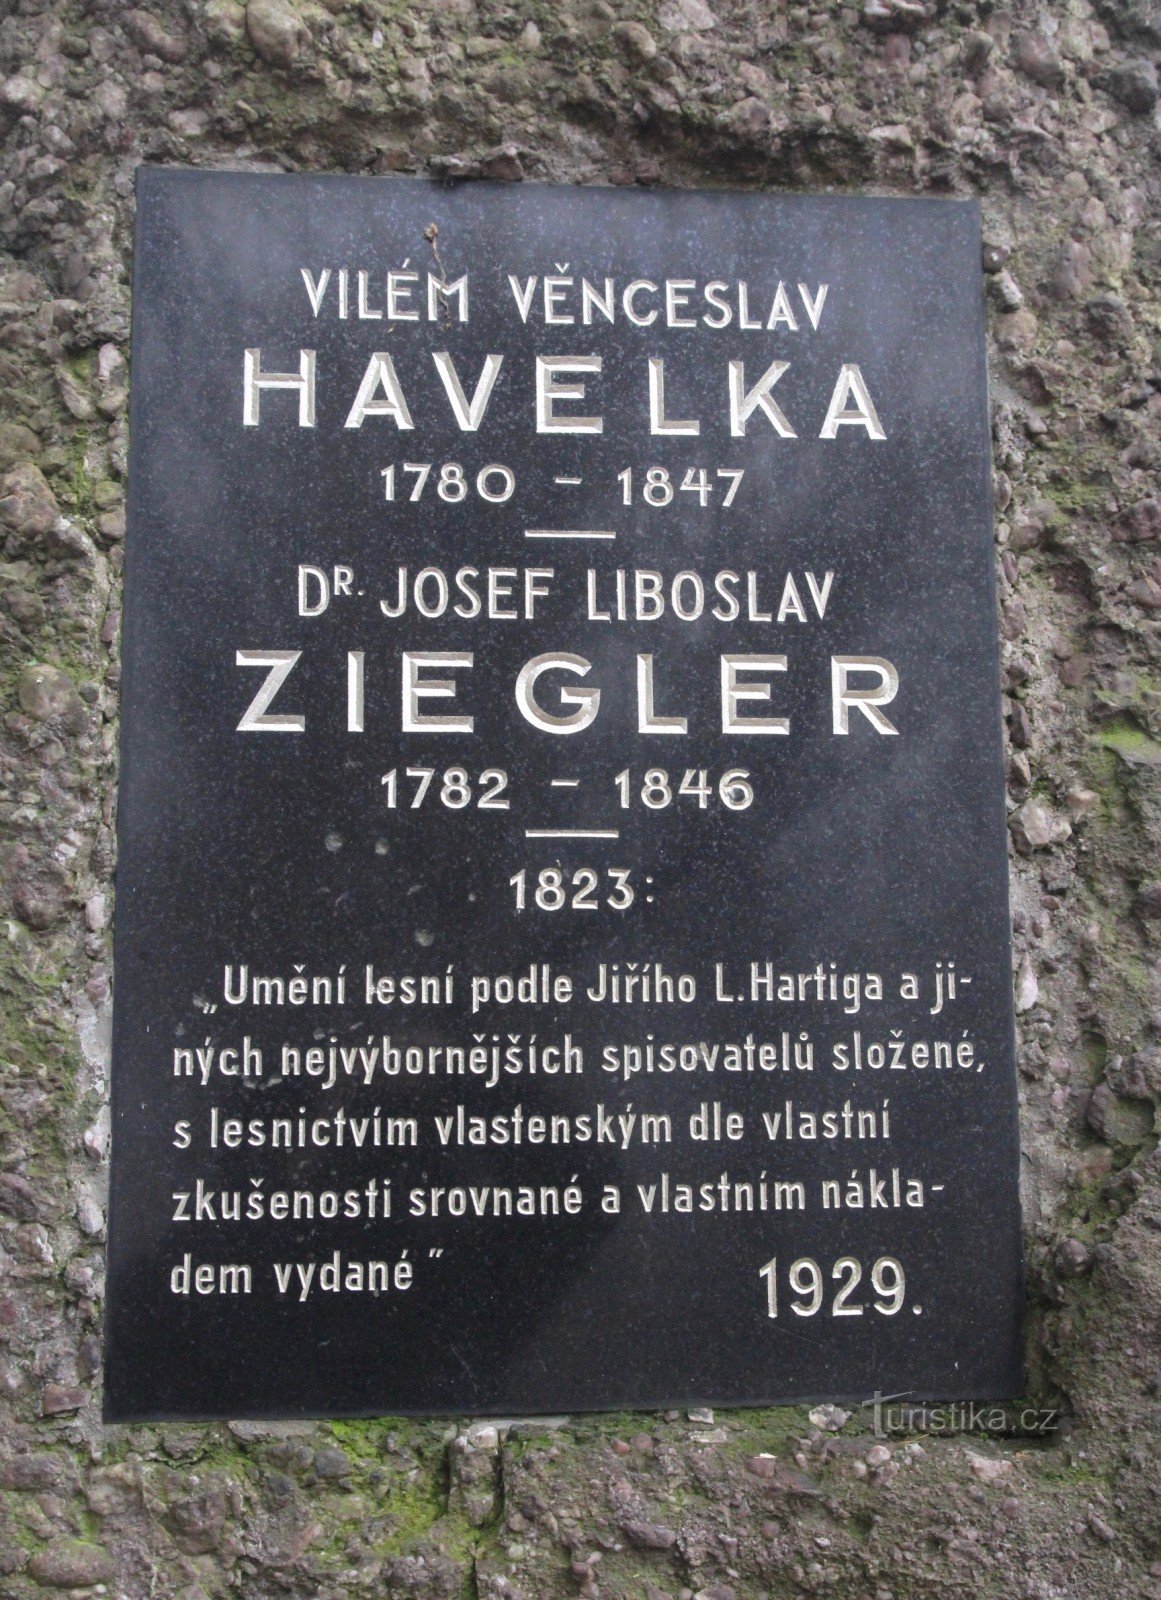 Памятник В.В. Гавелке и Ю.Л. Циглеру